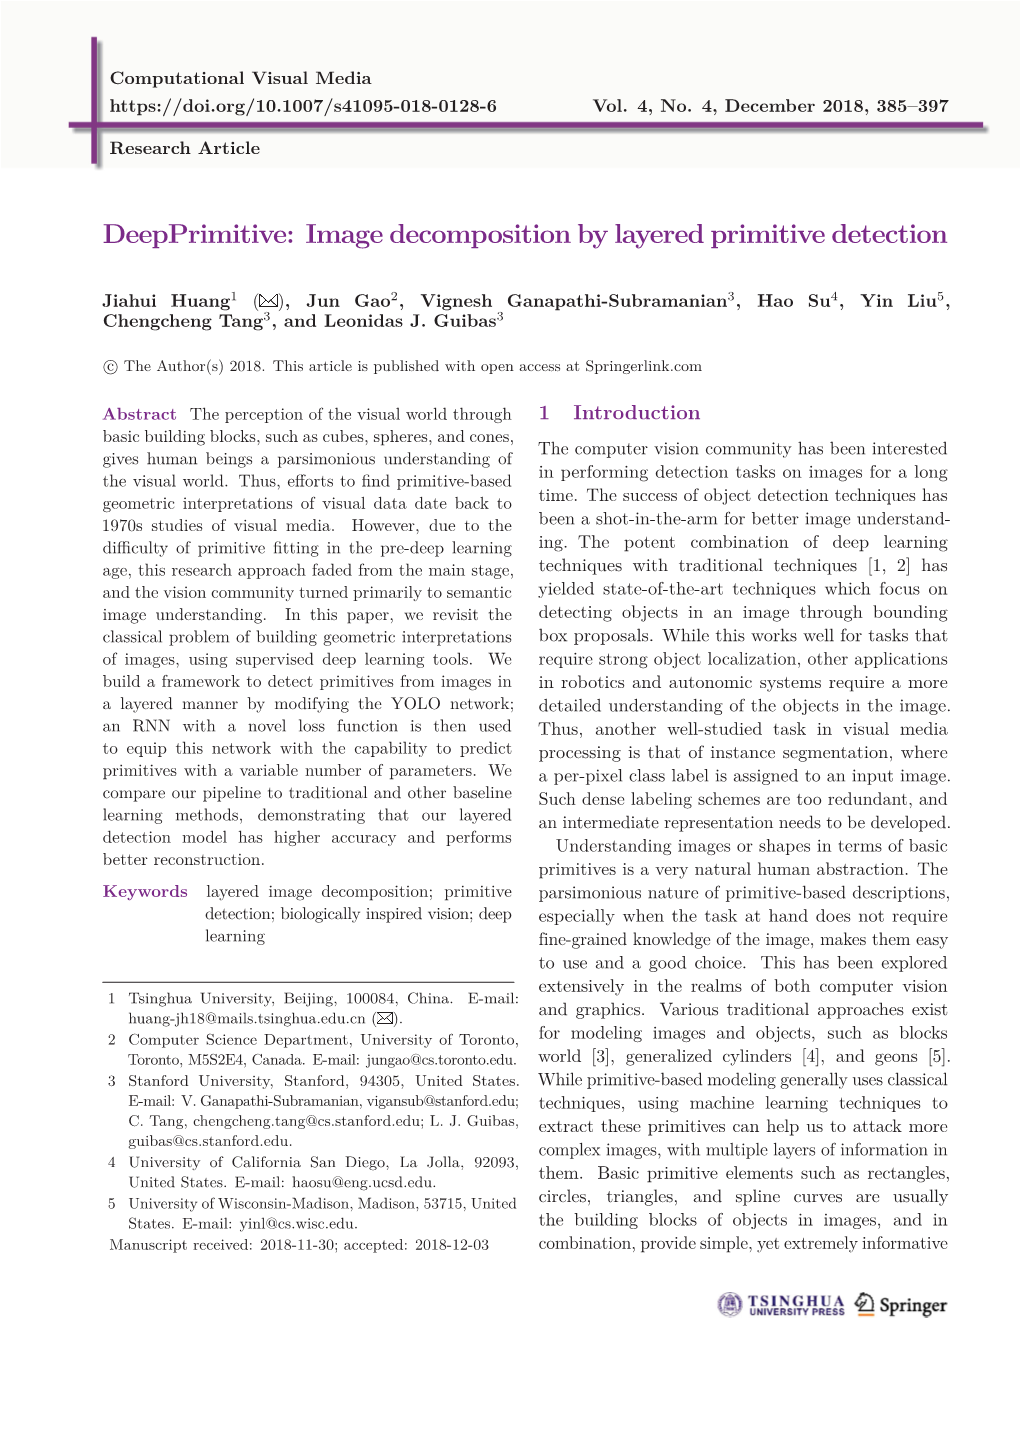 Deepprimitive: Image Decomposition by Layered Primitive Detection